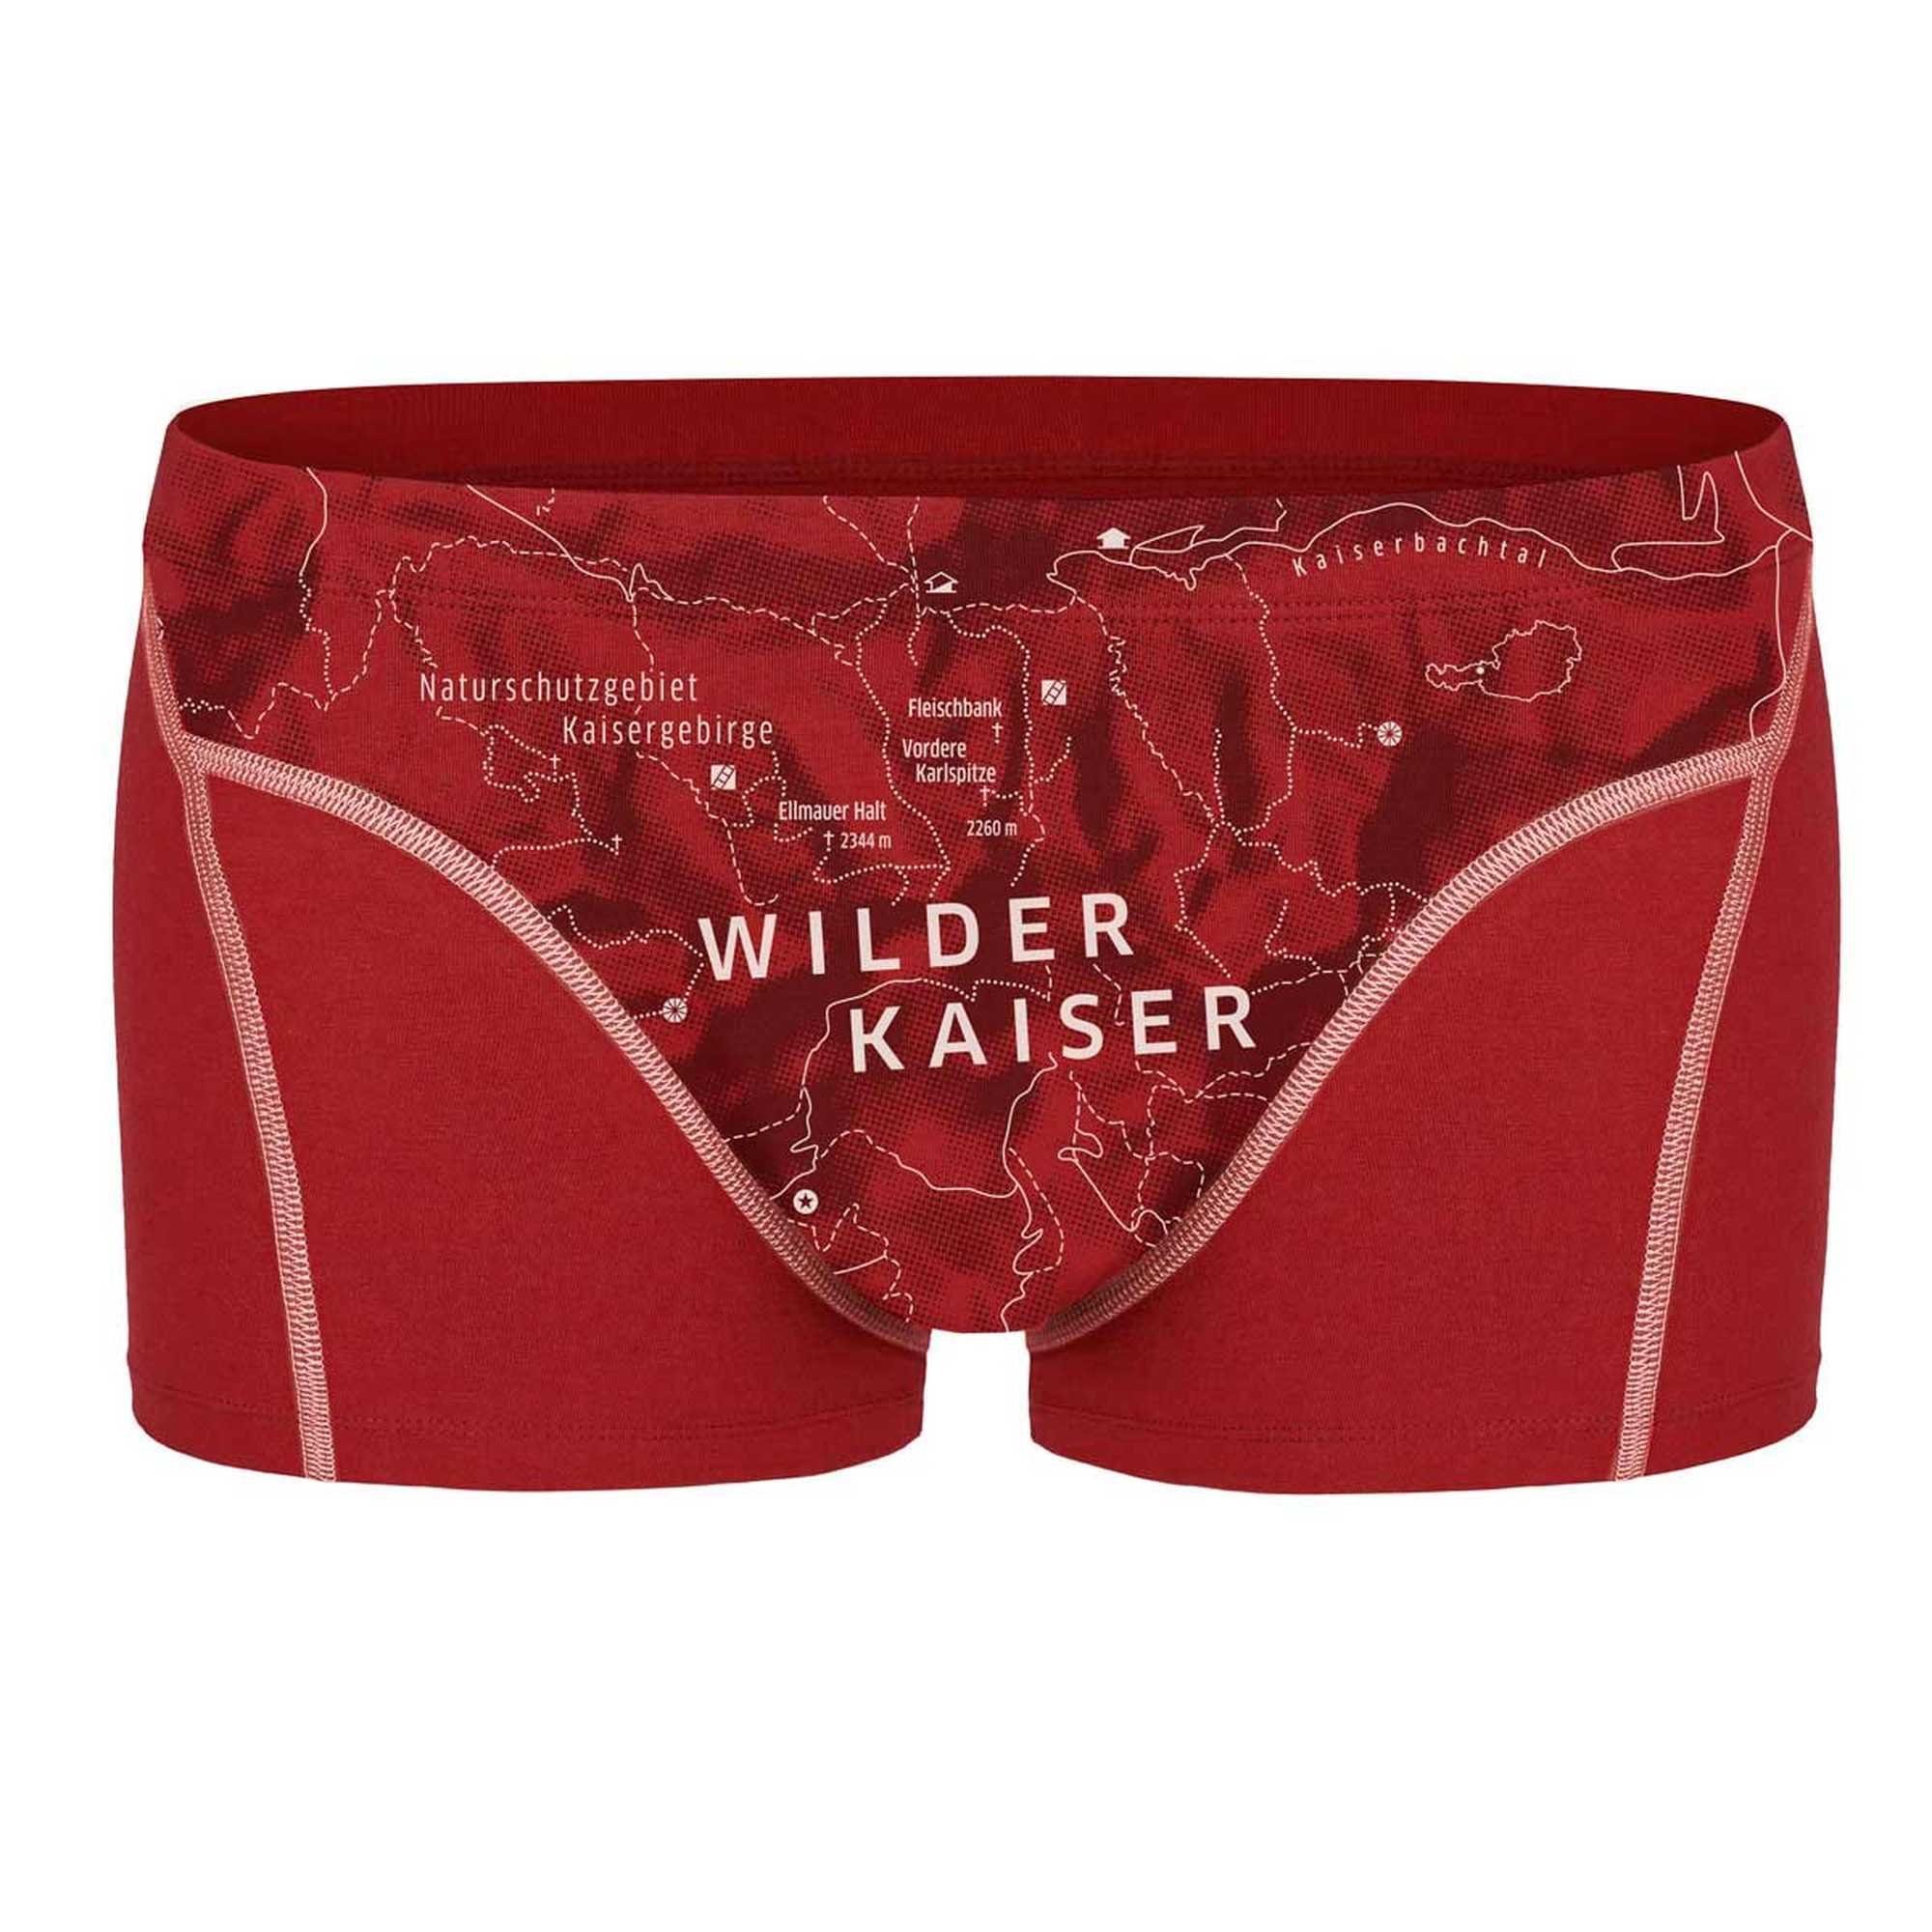 Ein schöner Fleck Erde Bio-Baumwolle Herren Boxershorts Shorts, Kaiser Print, Wilder - Boxer (Kaminrot)